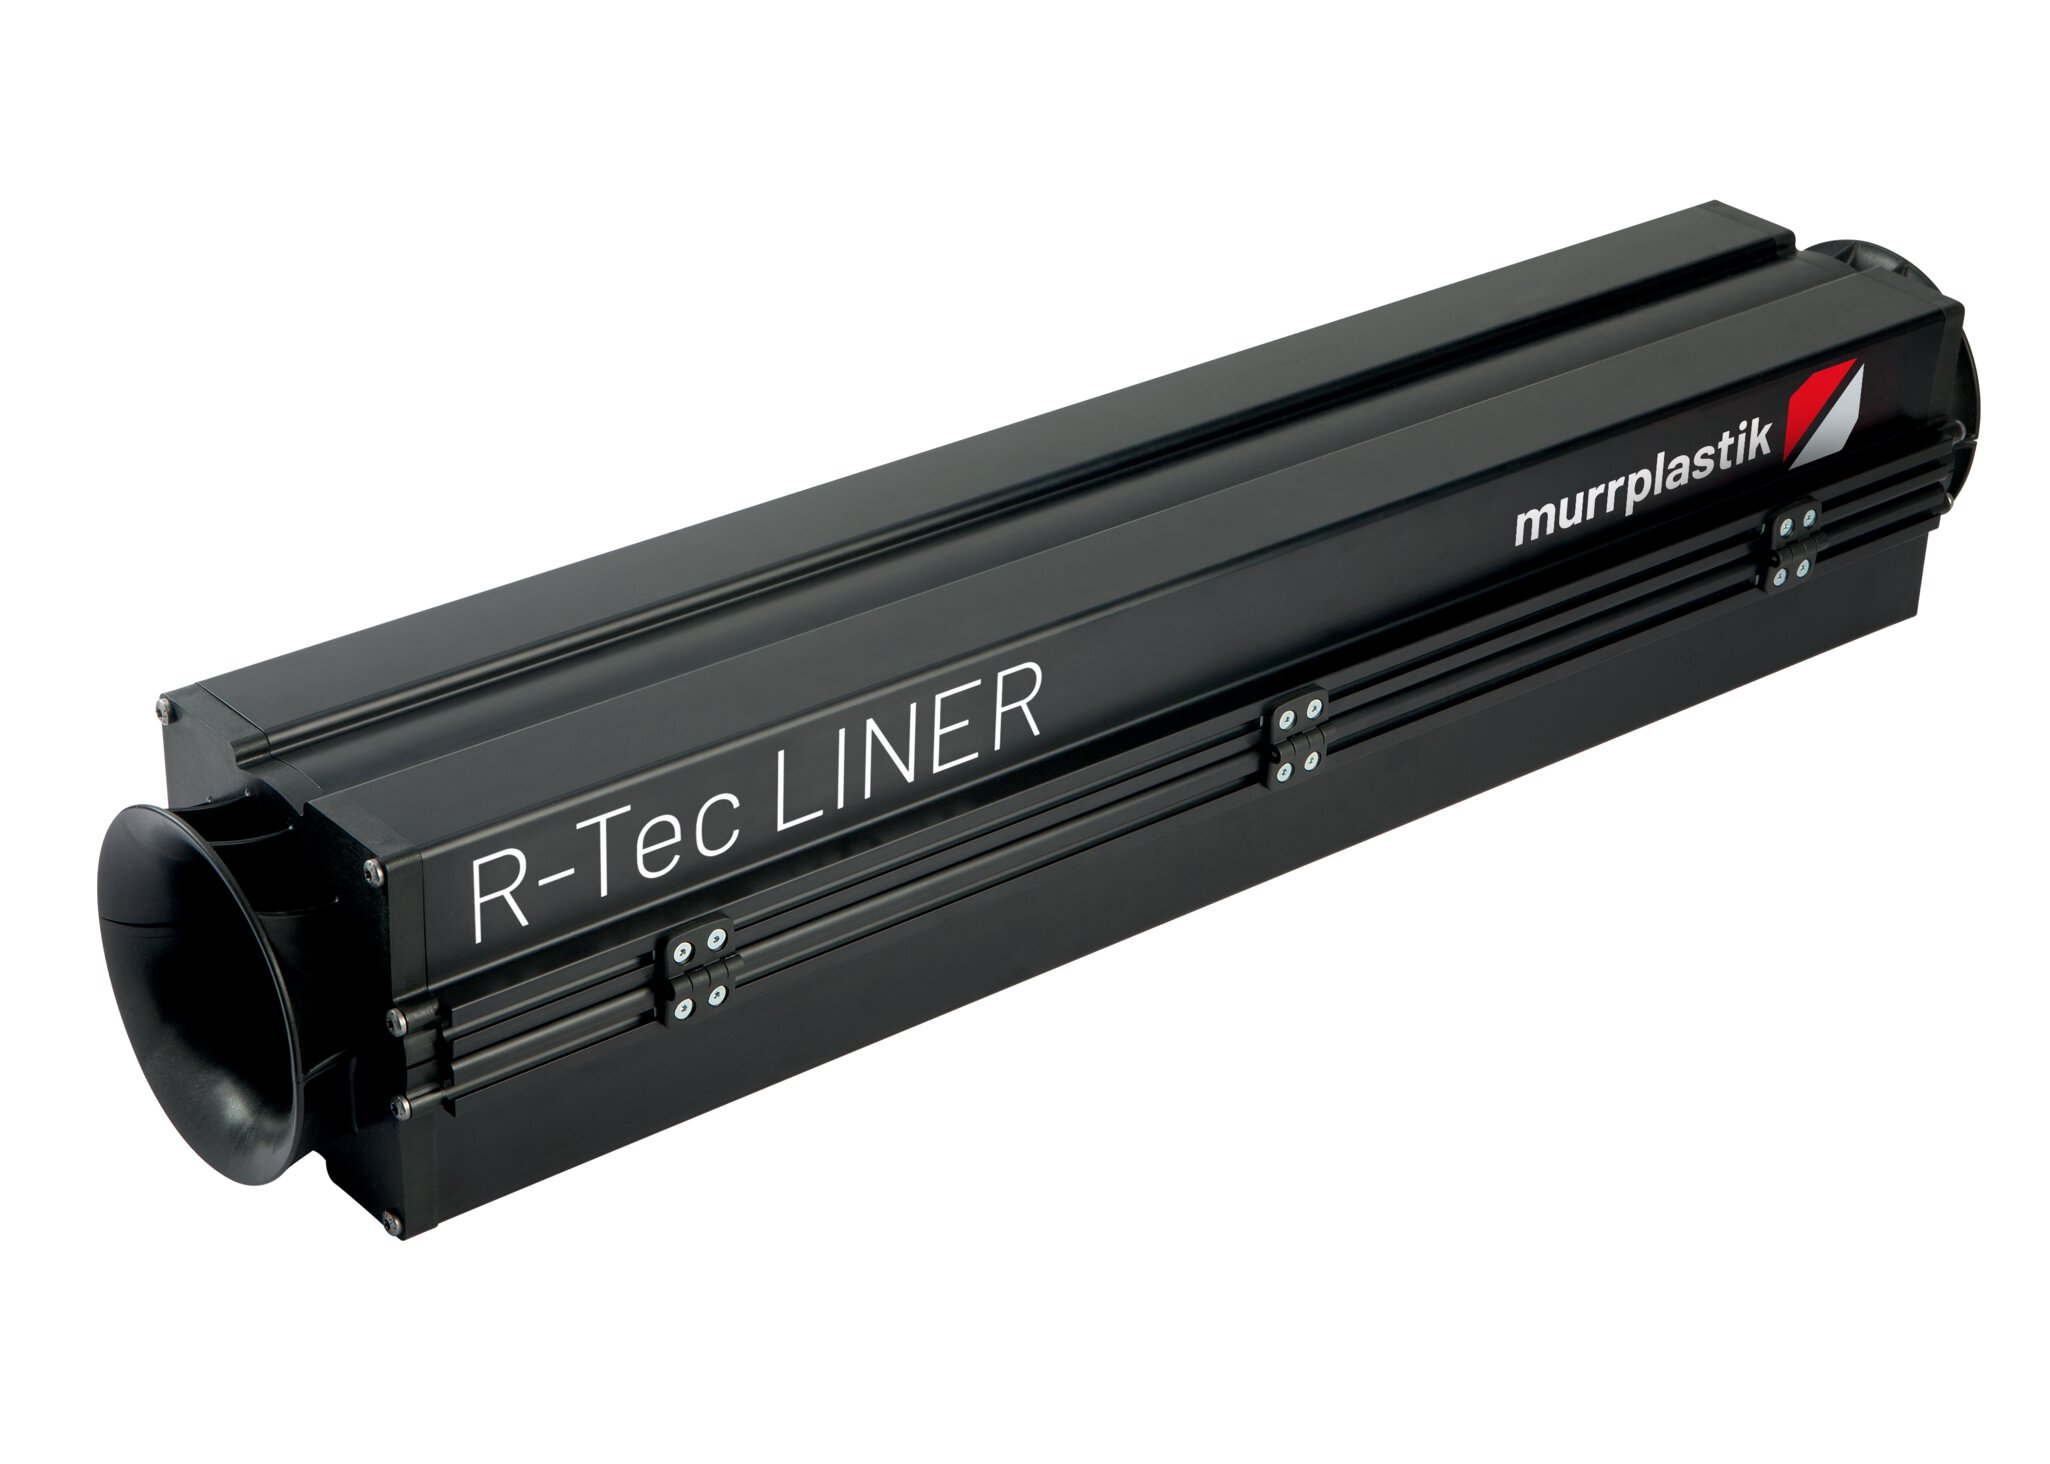 R-Tec Liner 10